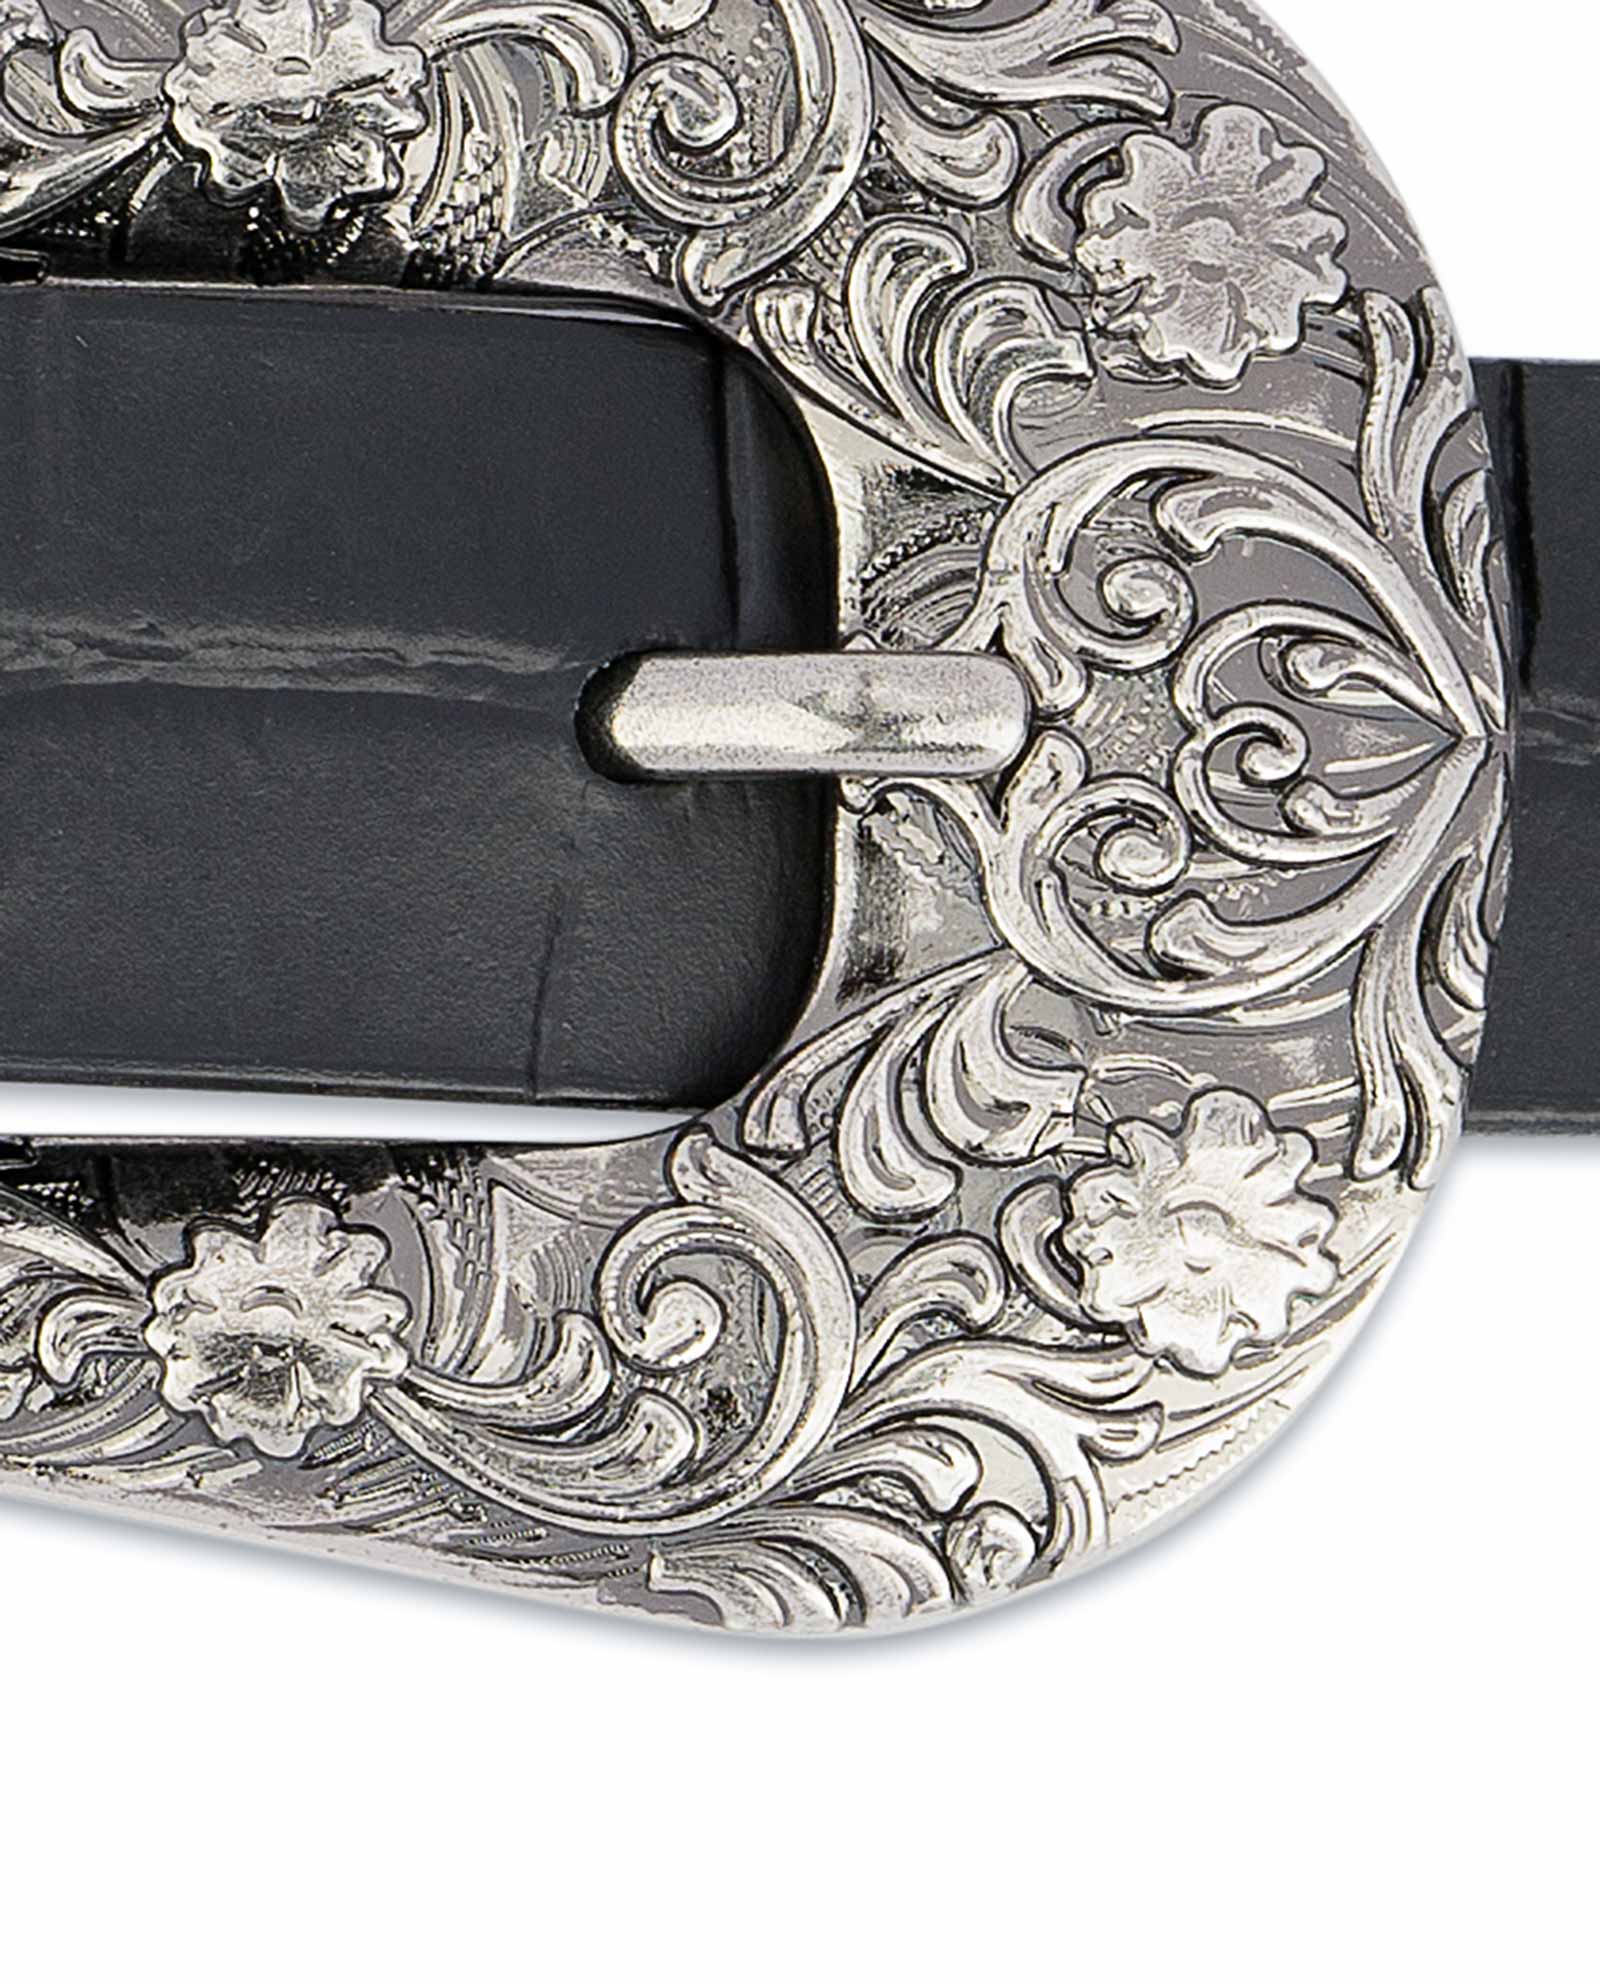 8seconds 20mm Real Leather Western Slim Belt Black